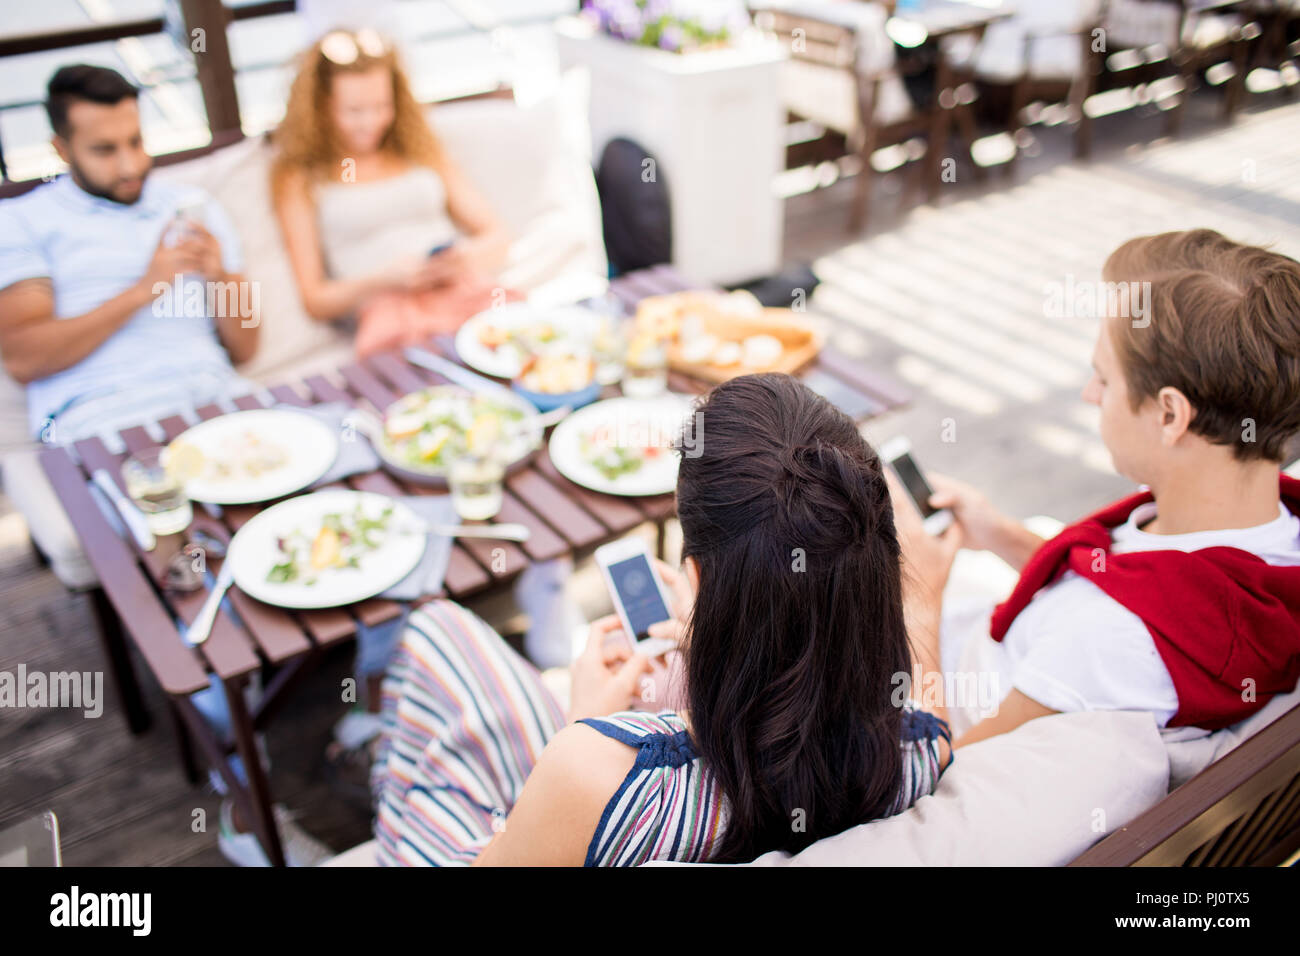 Personas que utilizan smartphones al mesita de café Foto de stock